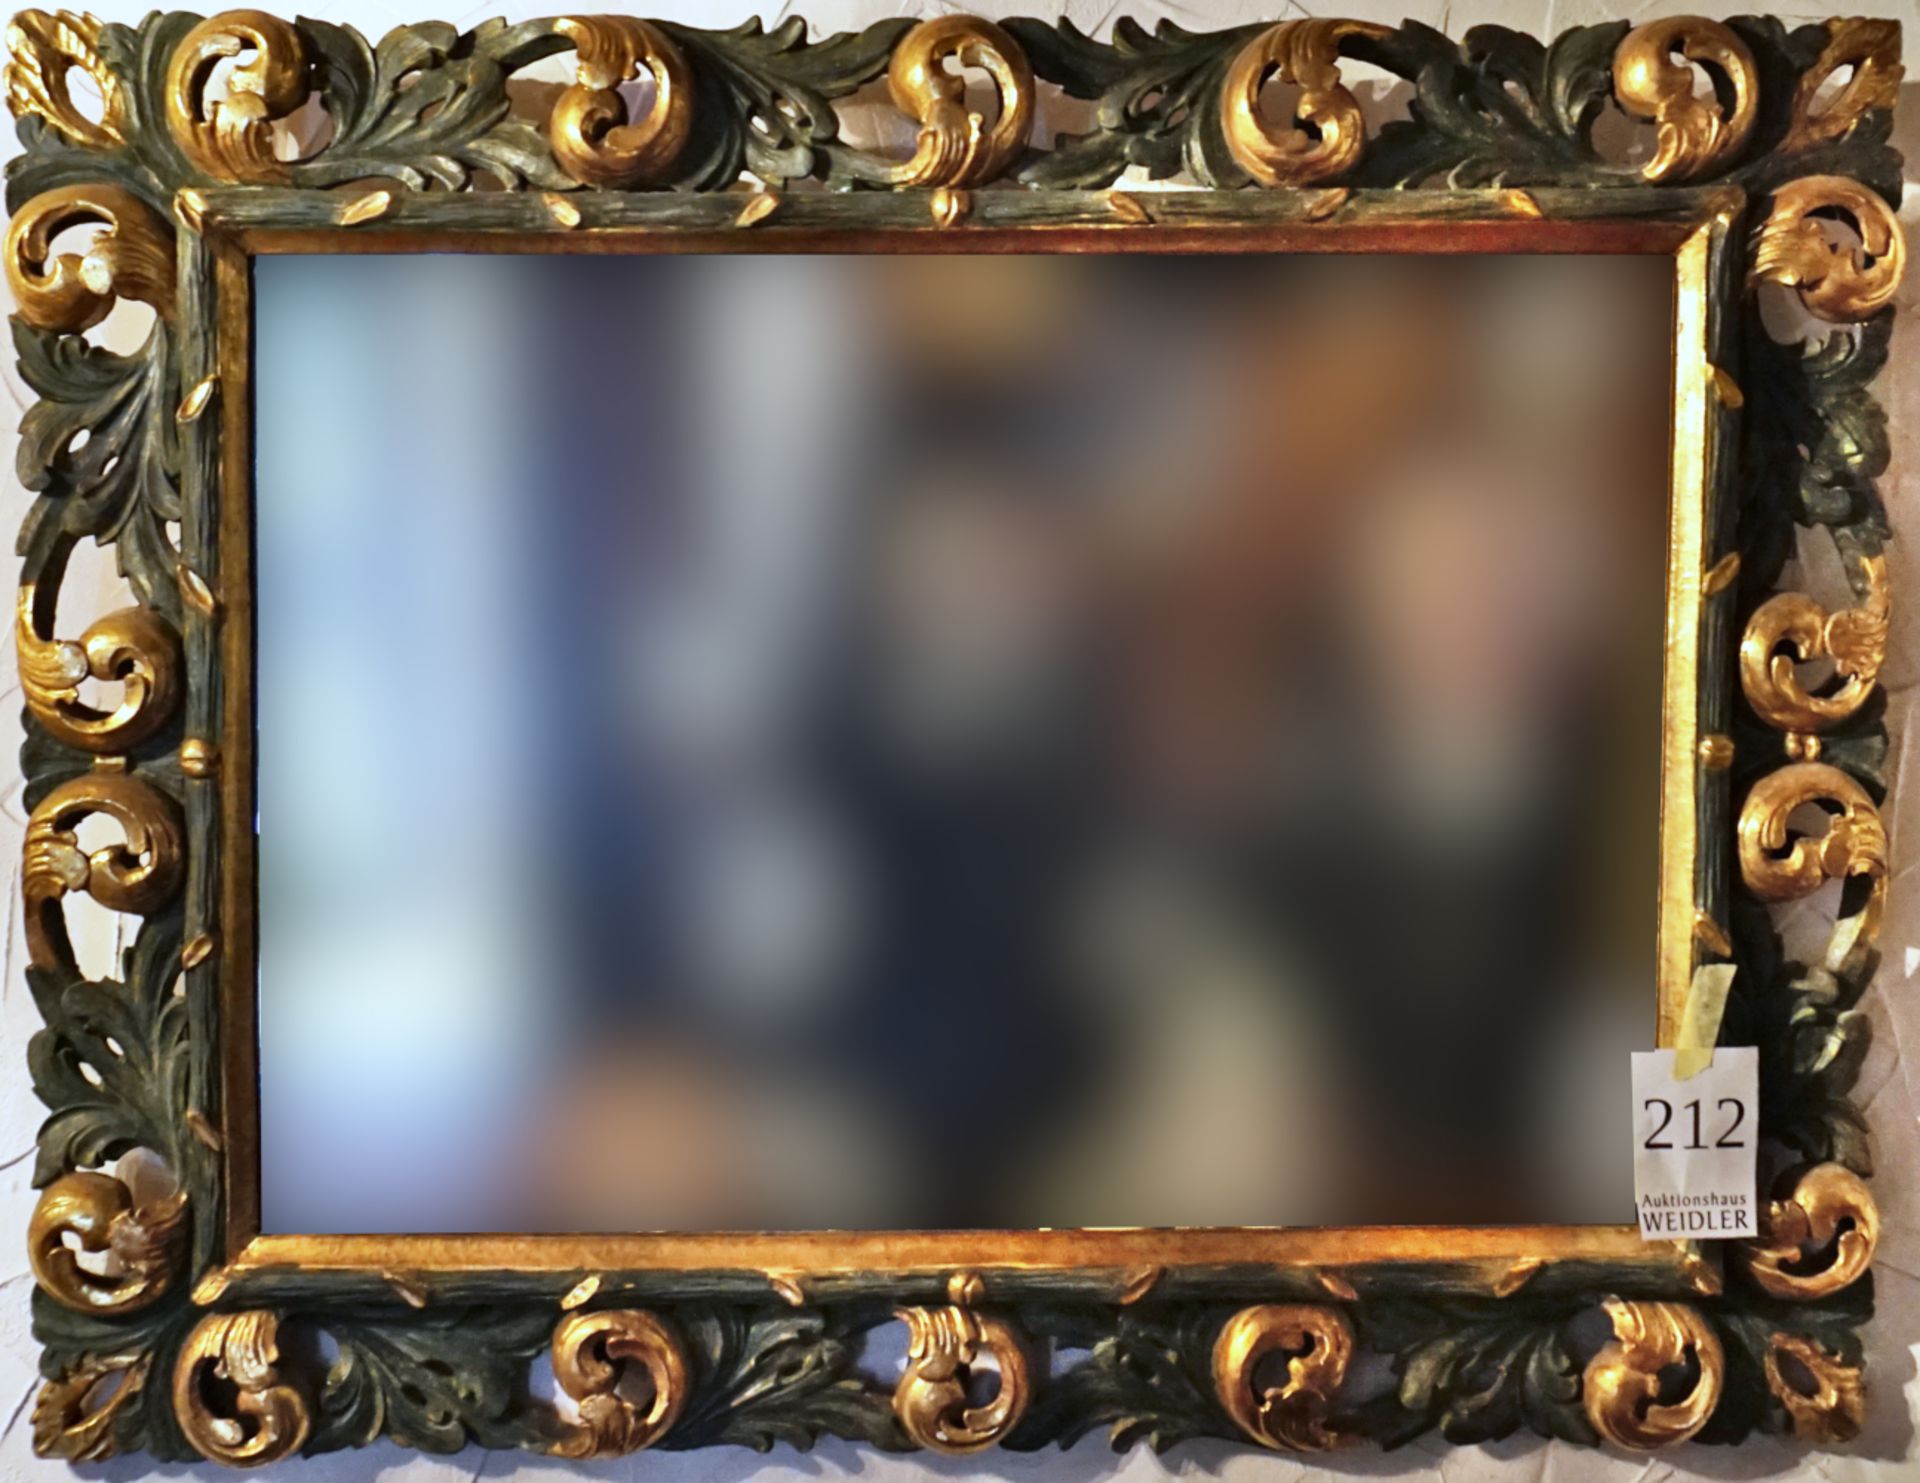 1 Spiegel, holzgeschnitzt, bemalt und vergoldet, H ca. 97cm B ca. 126cm, sowie 1 Holzfigur "Heilige"